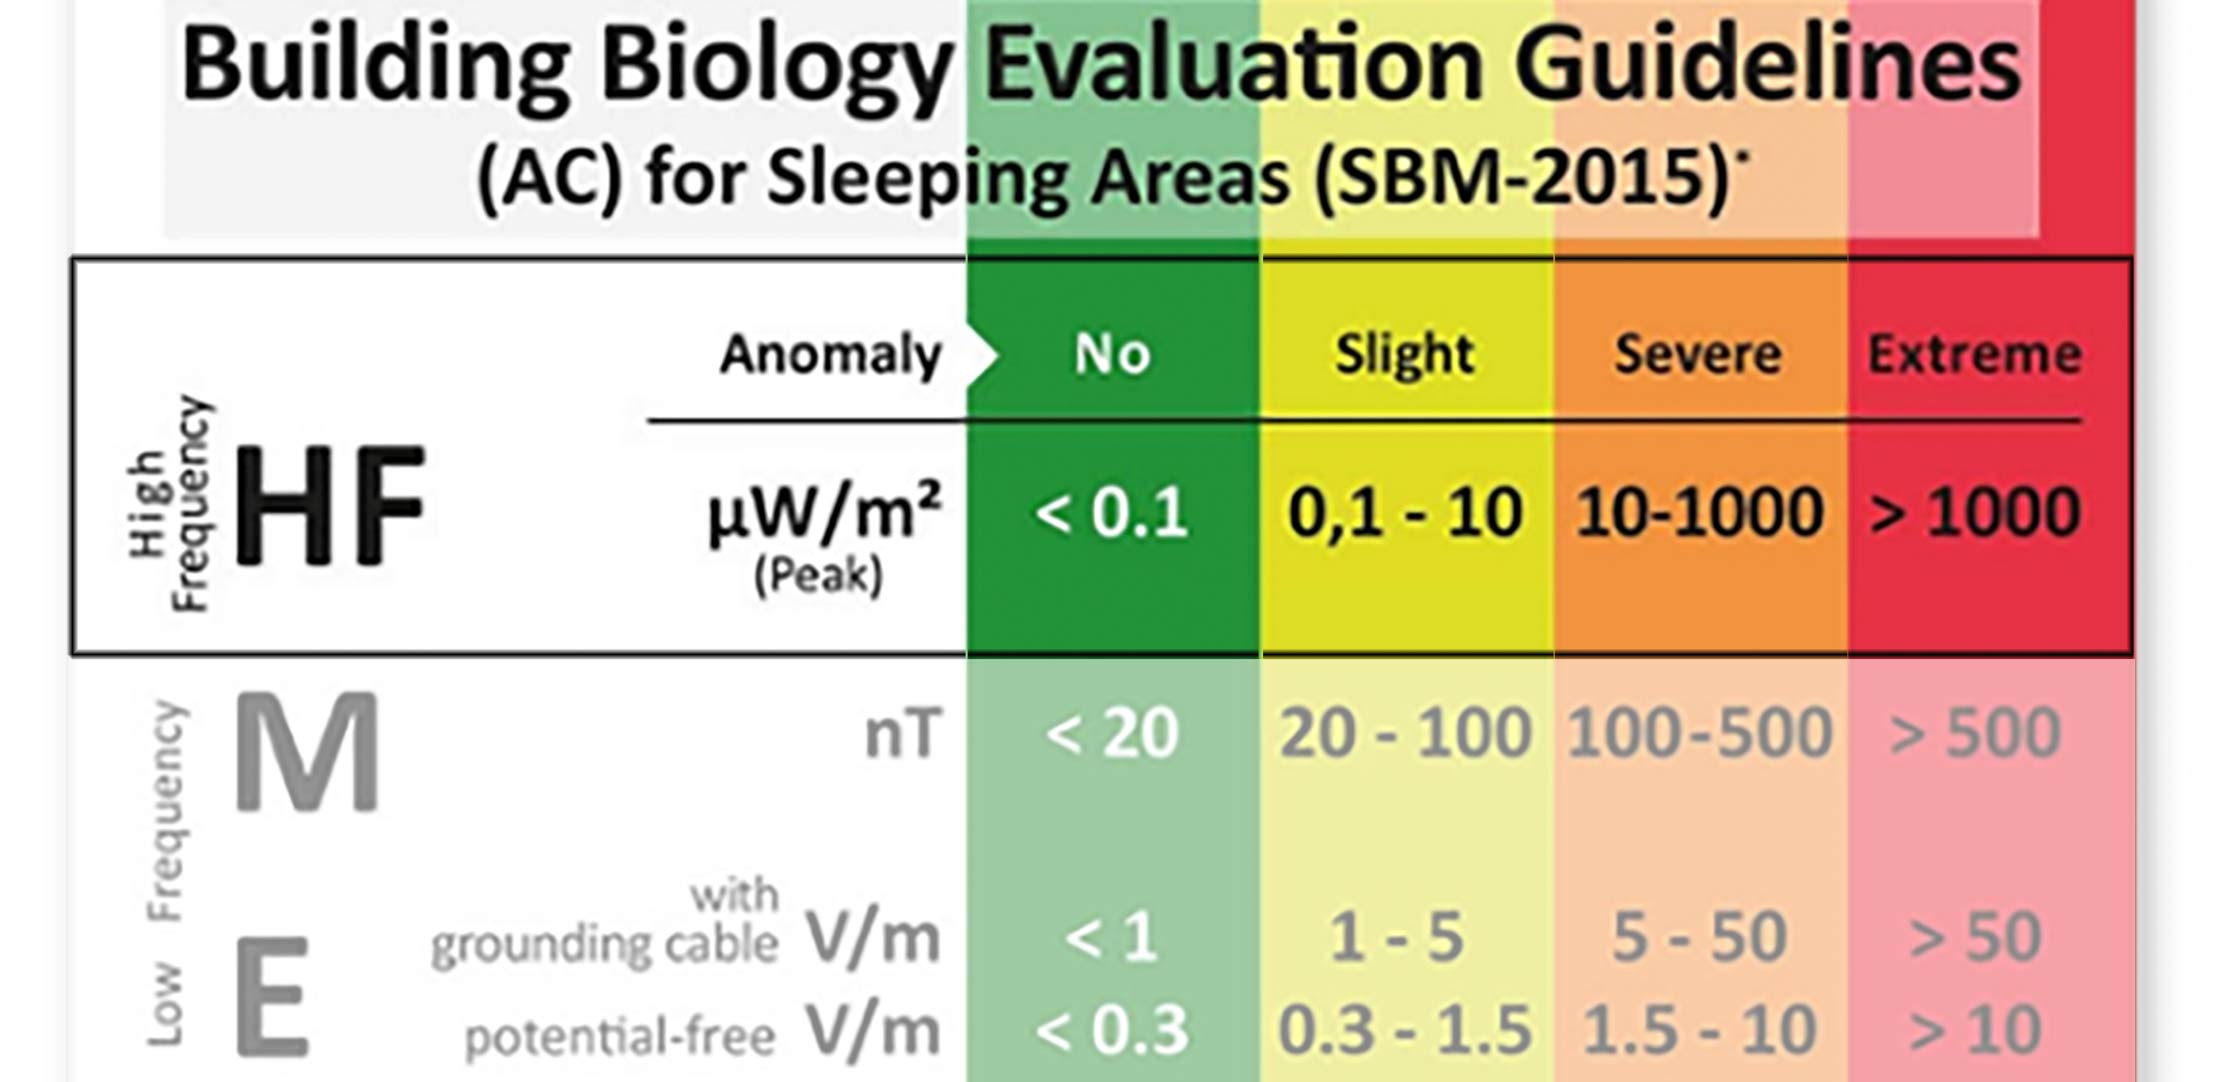 SBM-2015 richtlijnen voor blootstelling EMF in Microwatt/m2 (μW/m2).